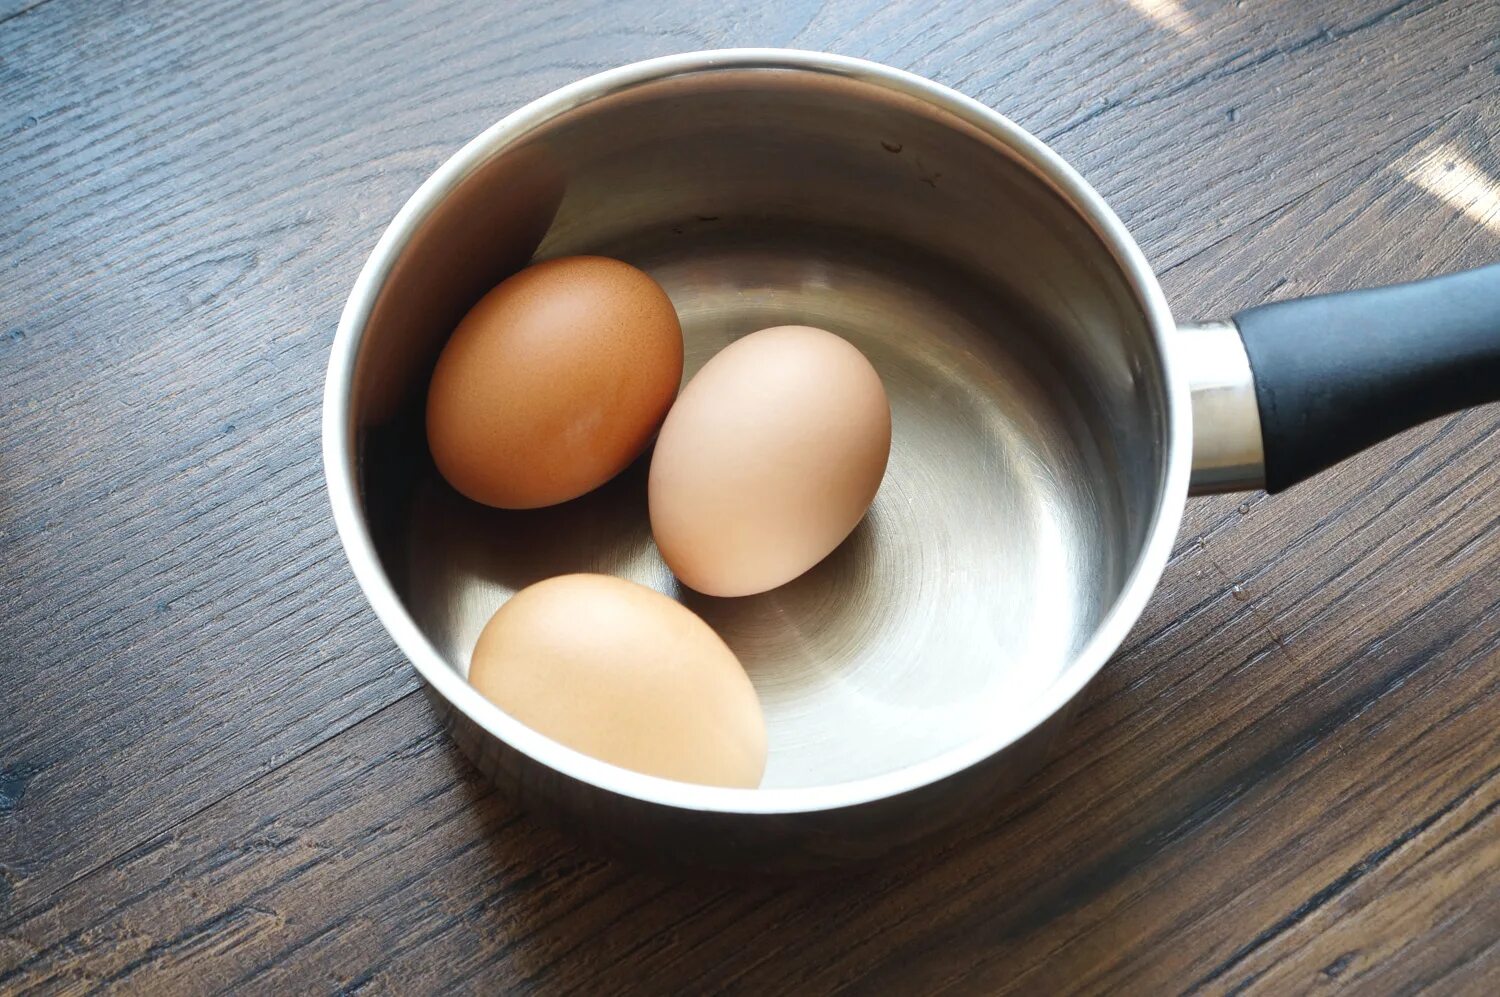 Как кипят яйца